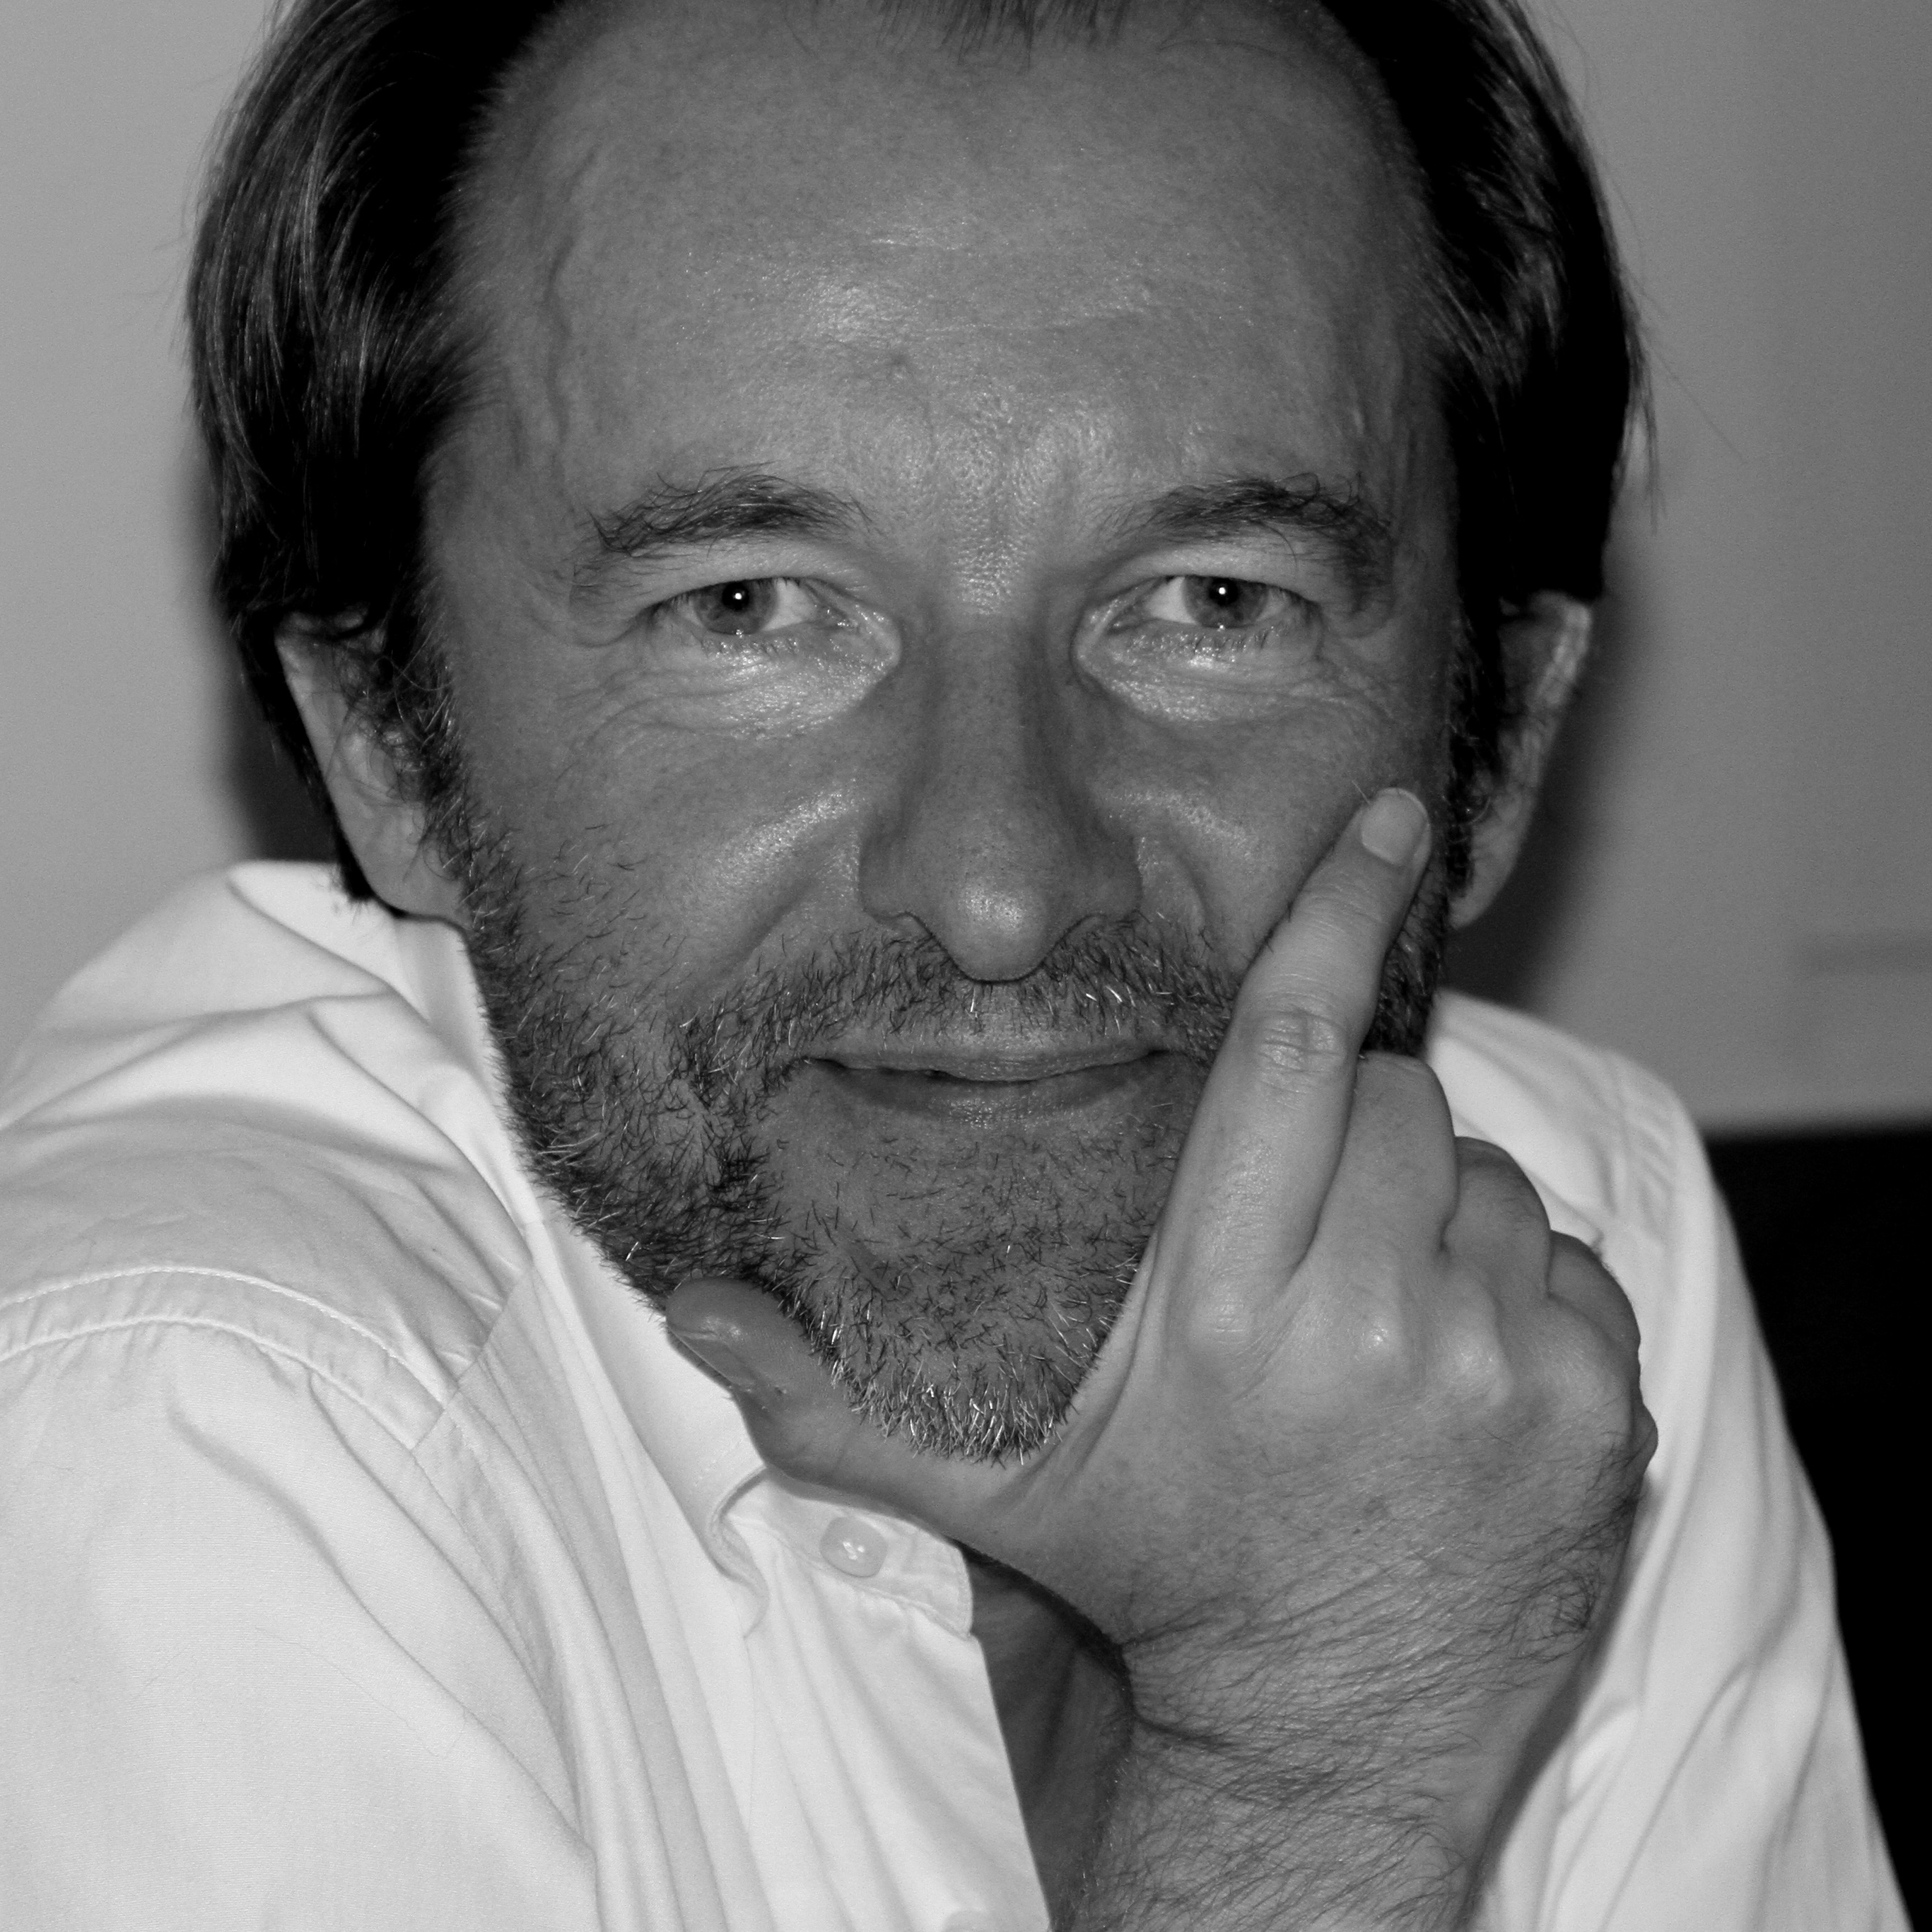 Jean-François Boyer